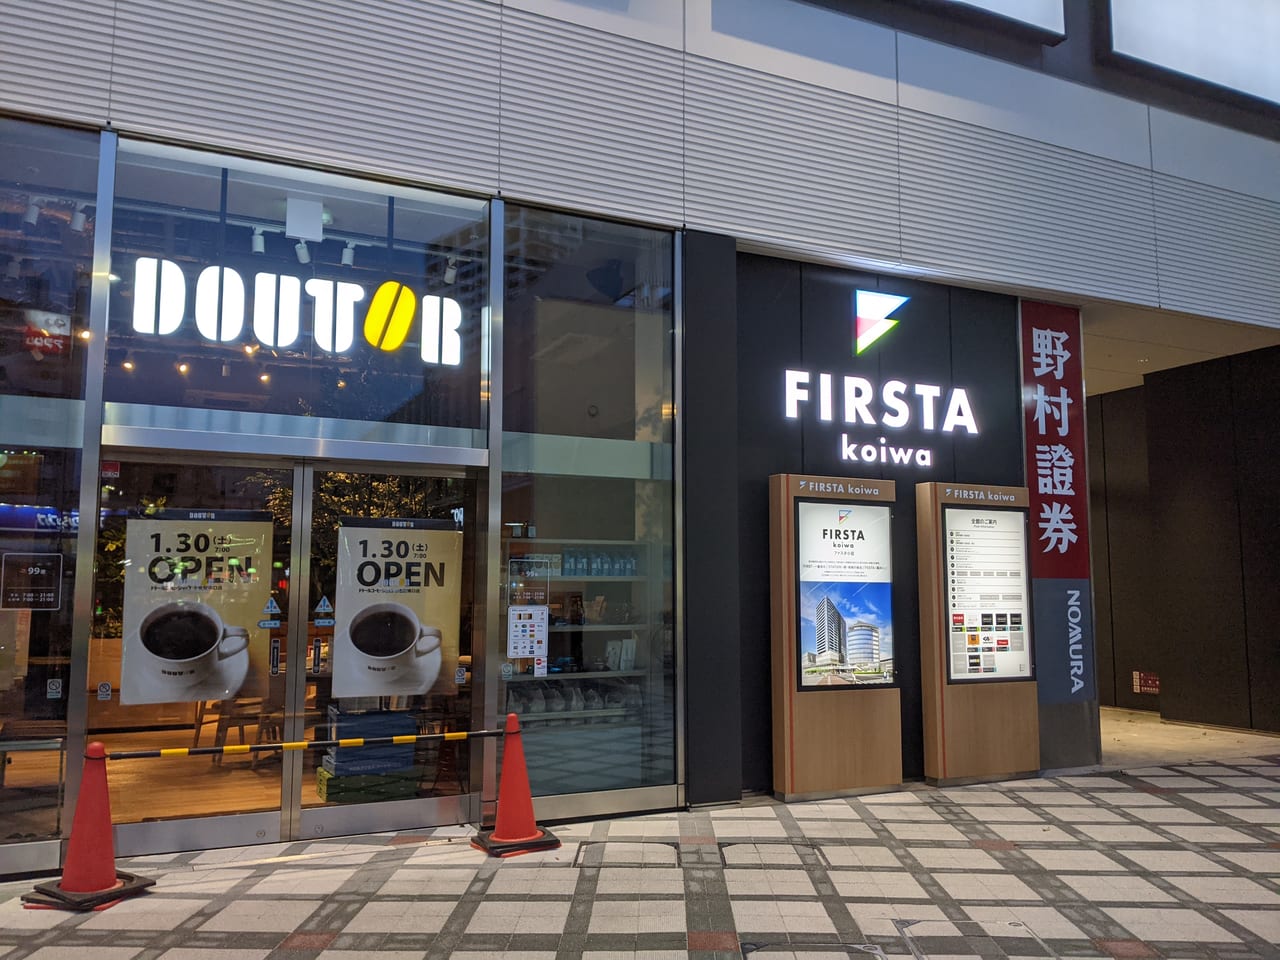 江戸川区 １月３０日より ドトールコーヒー くら寿司 など順次店舗がopenする Firsta Koiwa ファスタコイワ の１階に入る Koitto Terrace コイットテラス とは 調べてみました 号外net 江戸川区